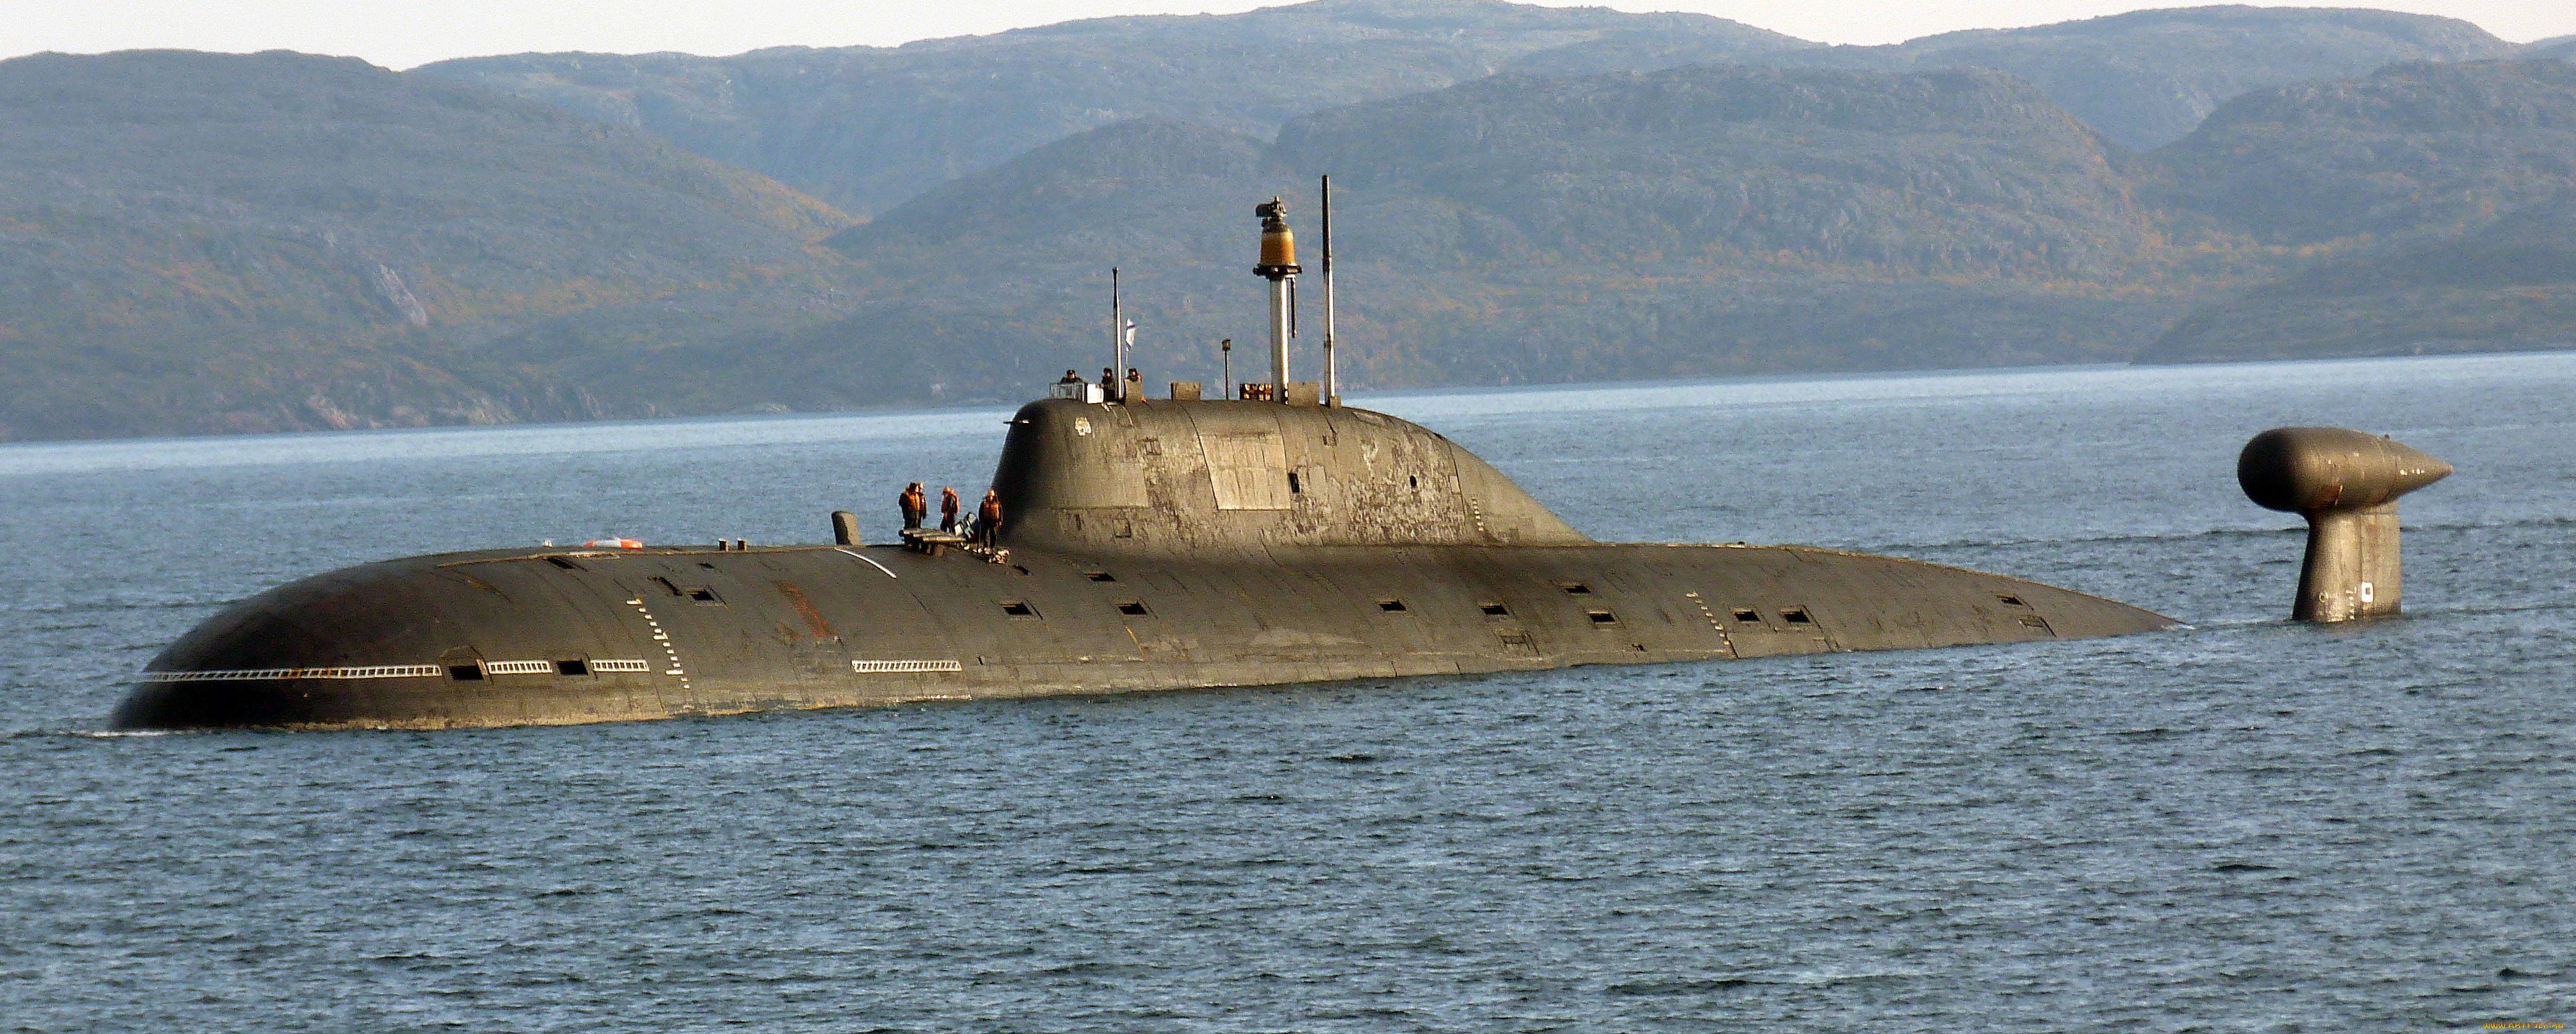 Проект 971 «Щука-Б» - атомные подводные лодки